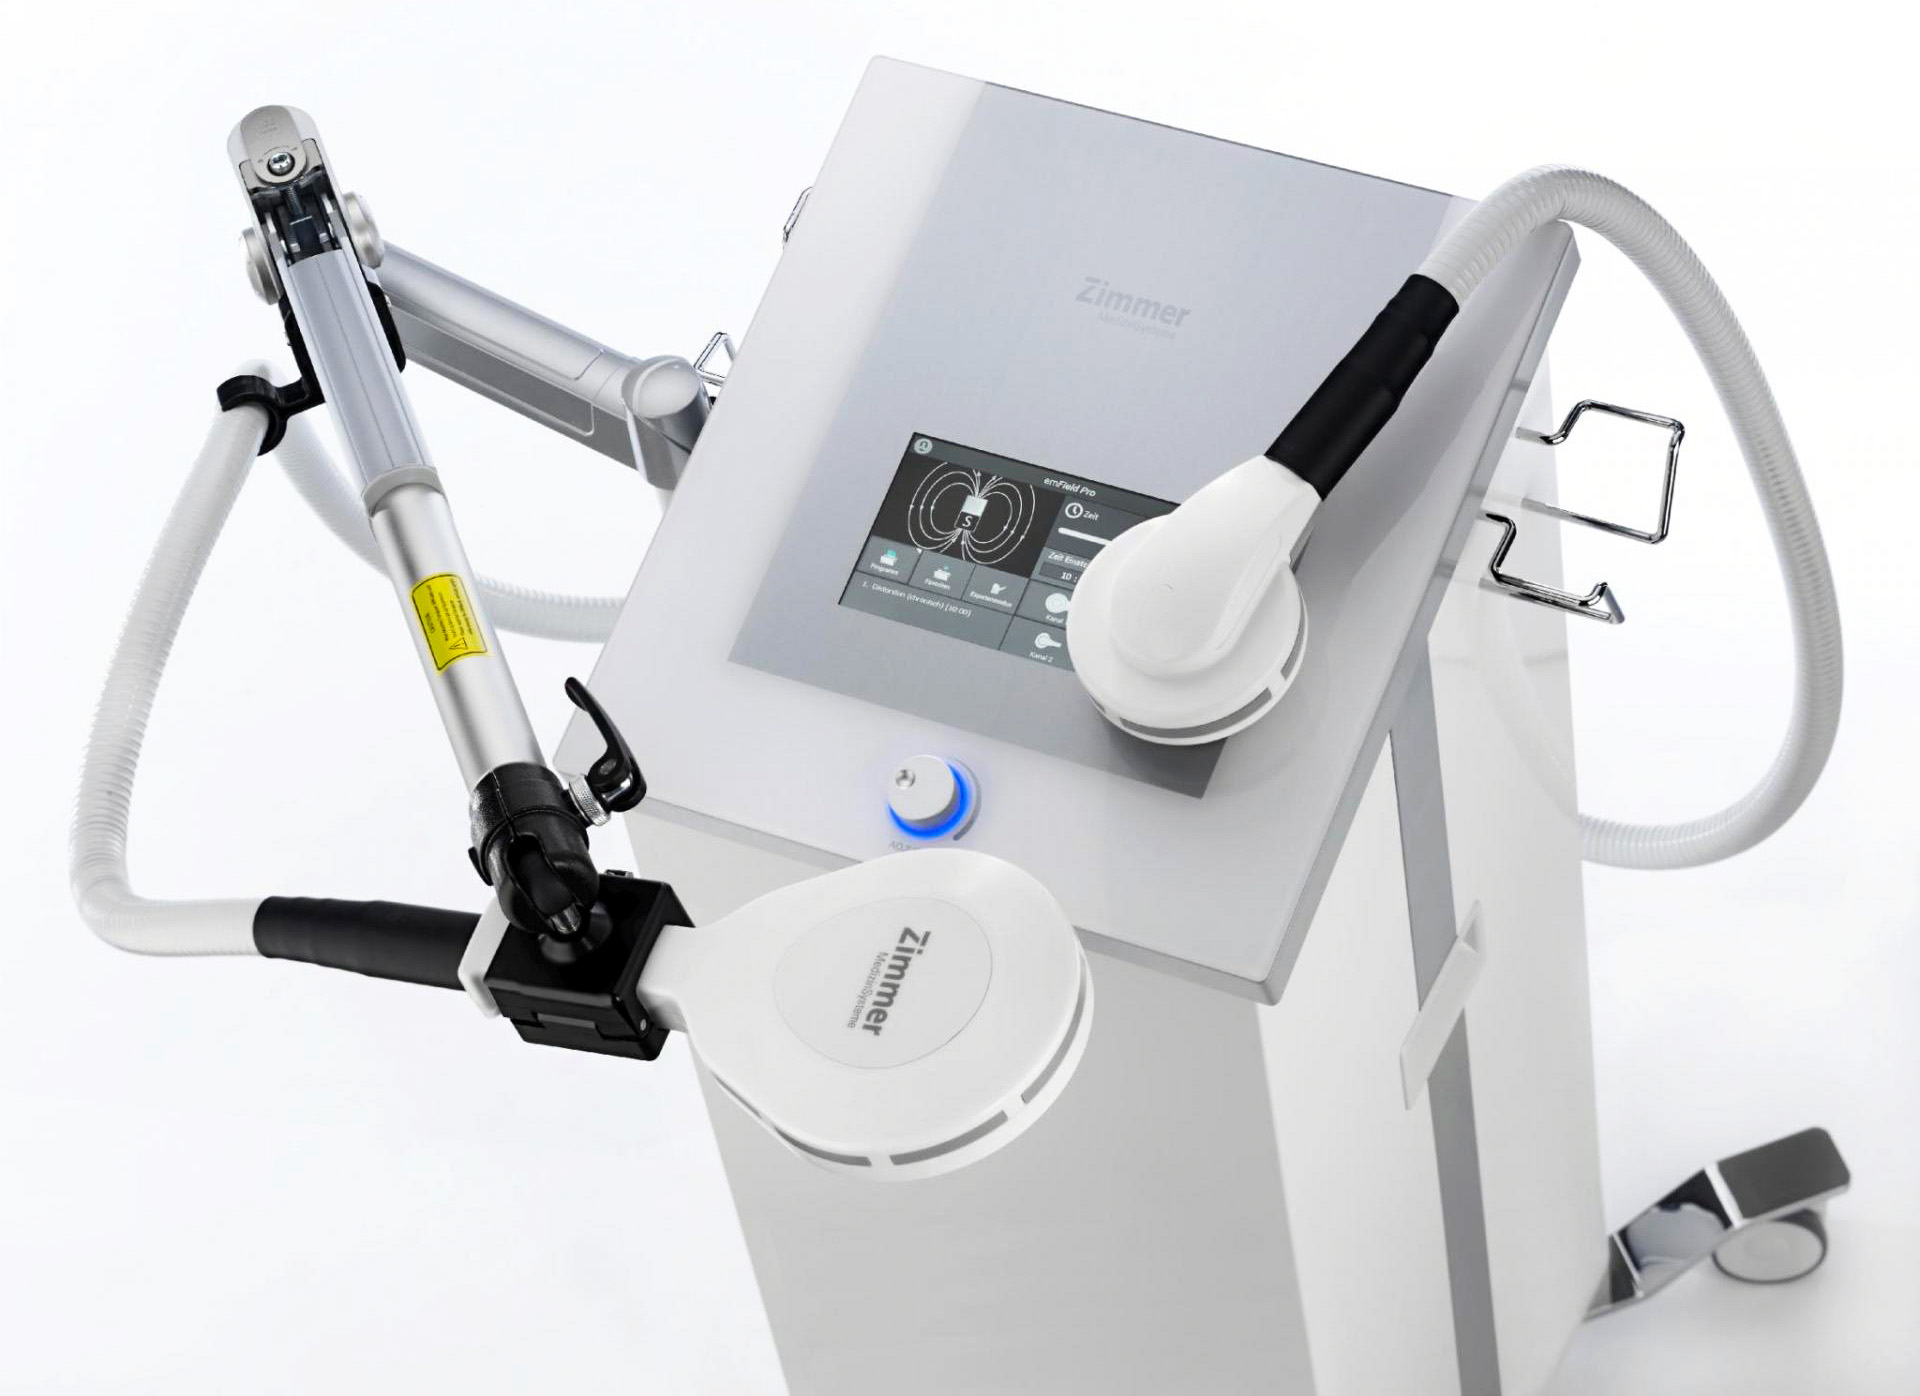 Аппарат для высокоинтенсивной магнитной терапии Zimmer emField Pro